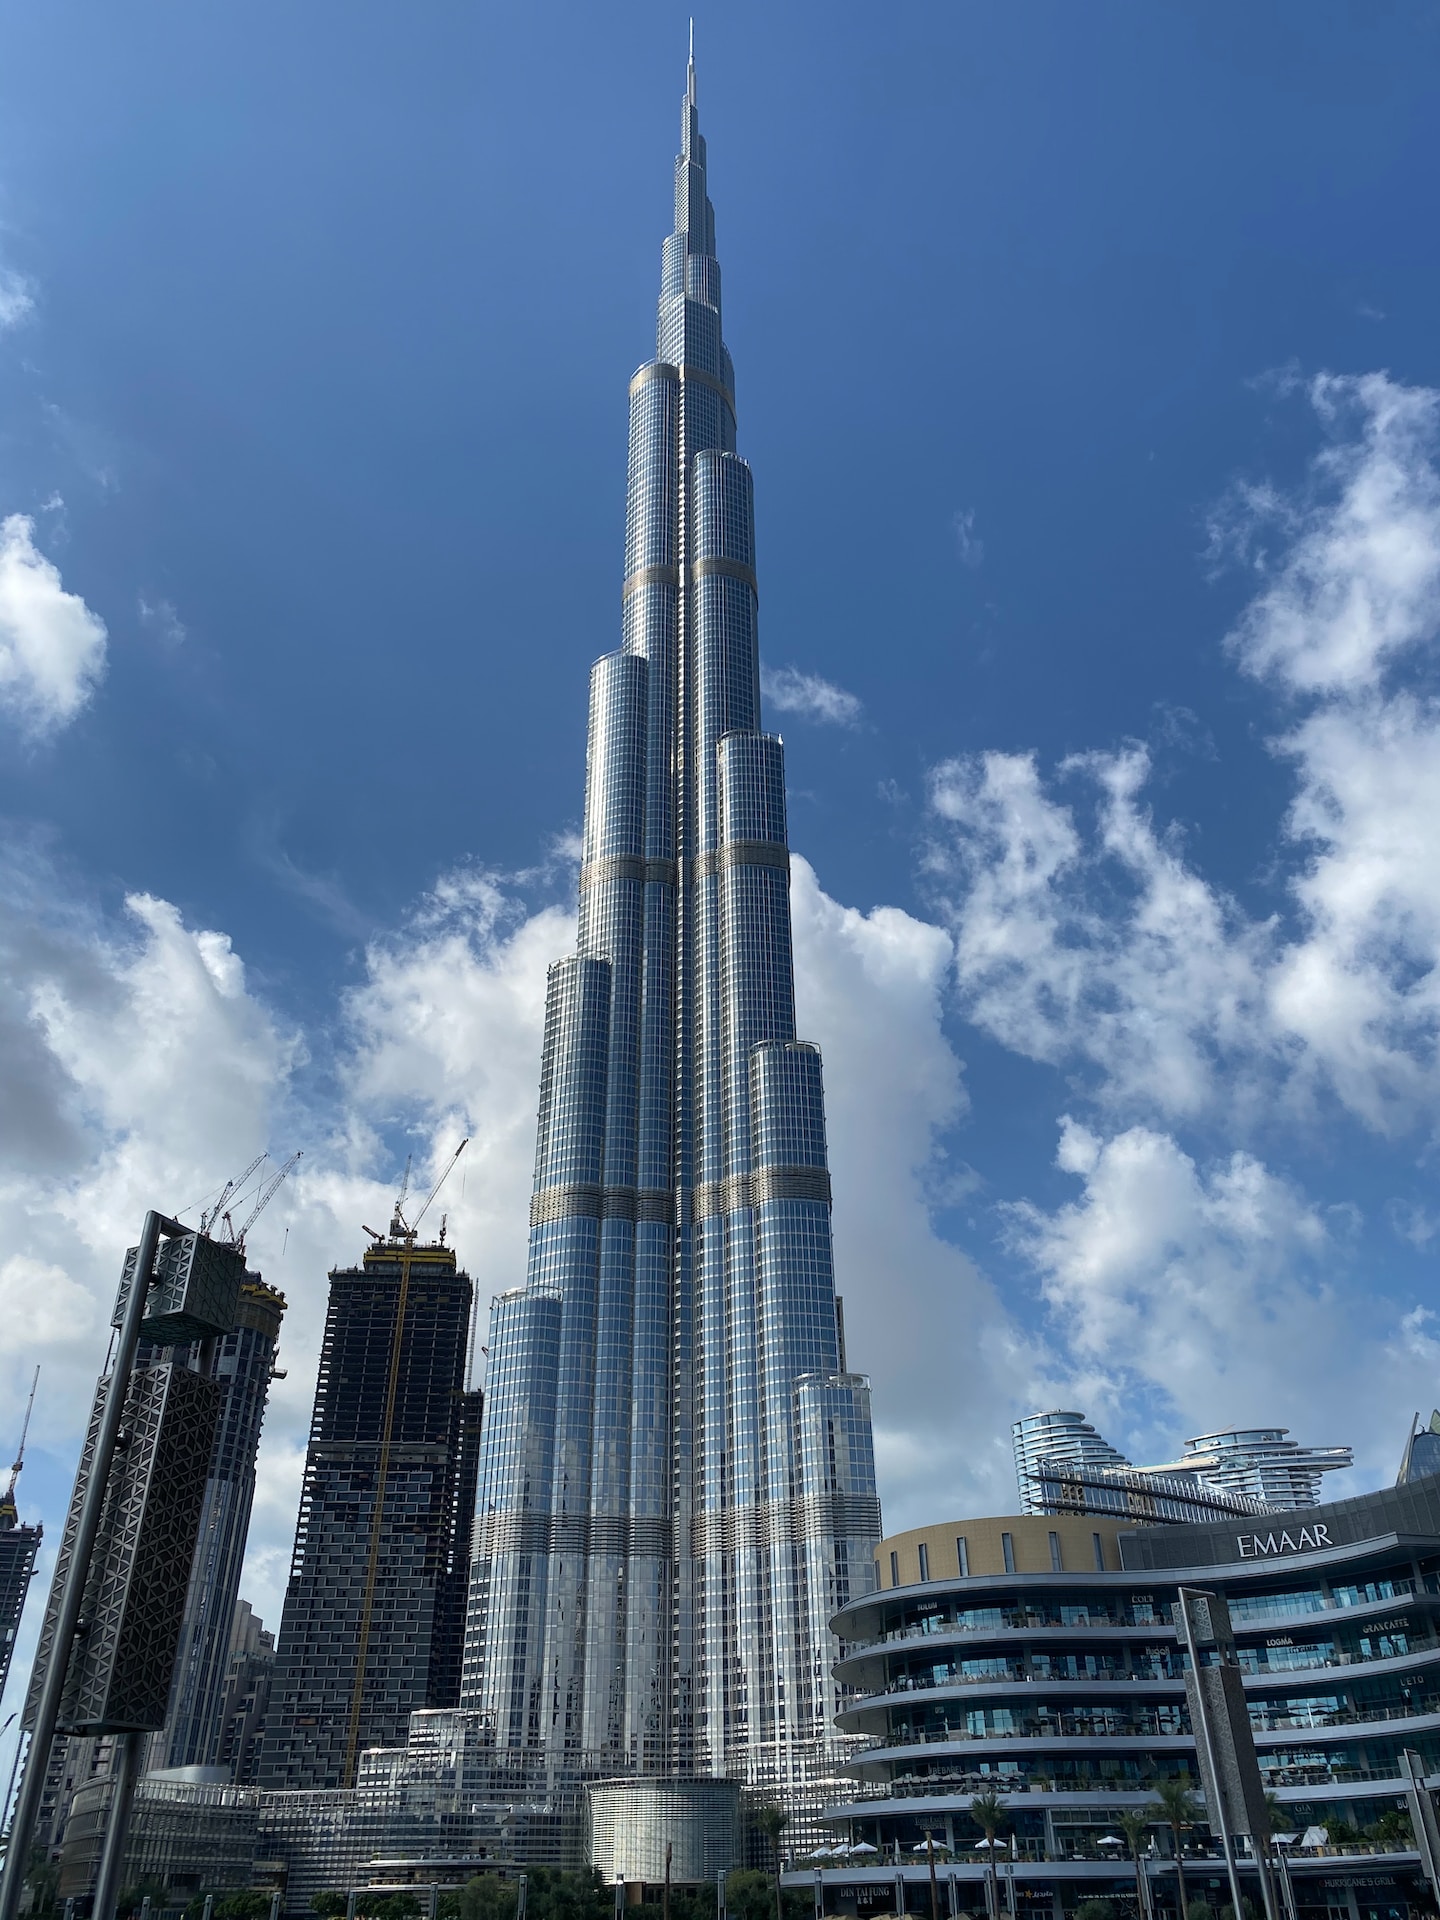 Will Dubai property prices come down?